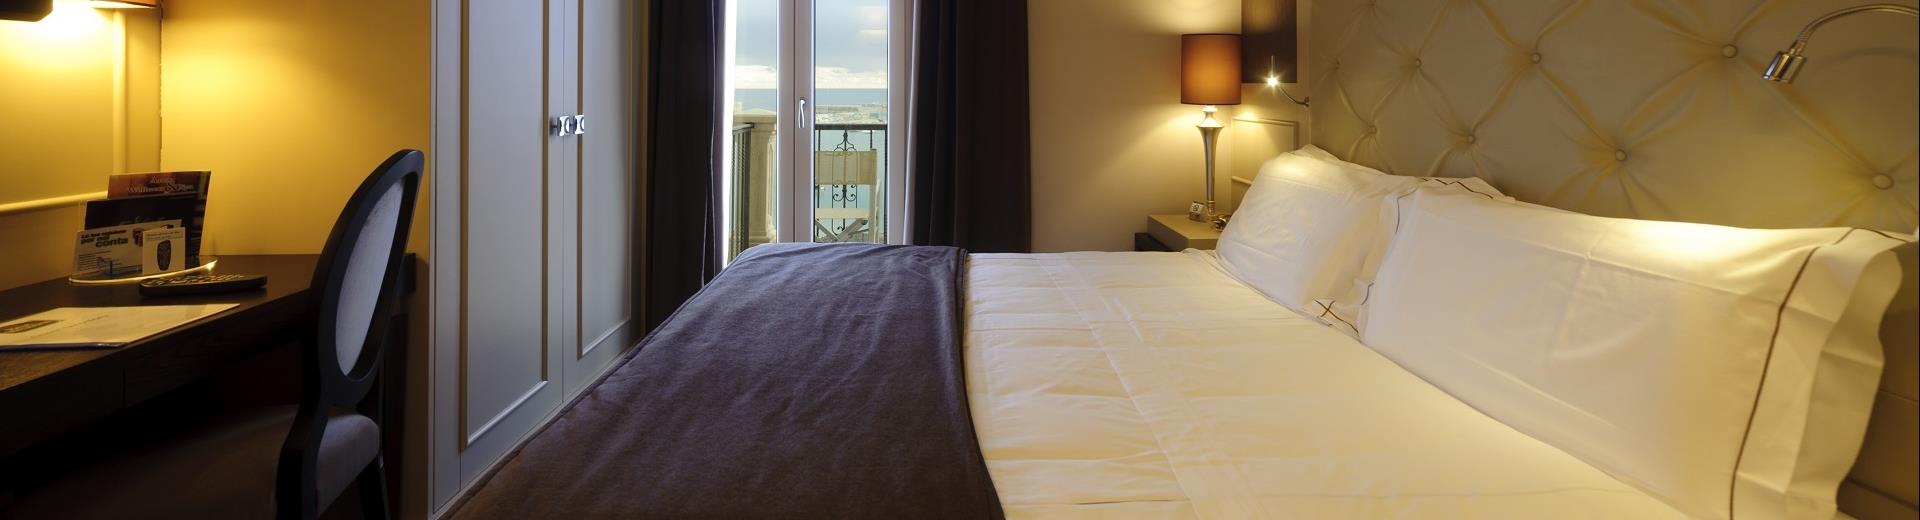 Superior room in Best Western Hotel Perla del Porto in Catanzaro Lido